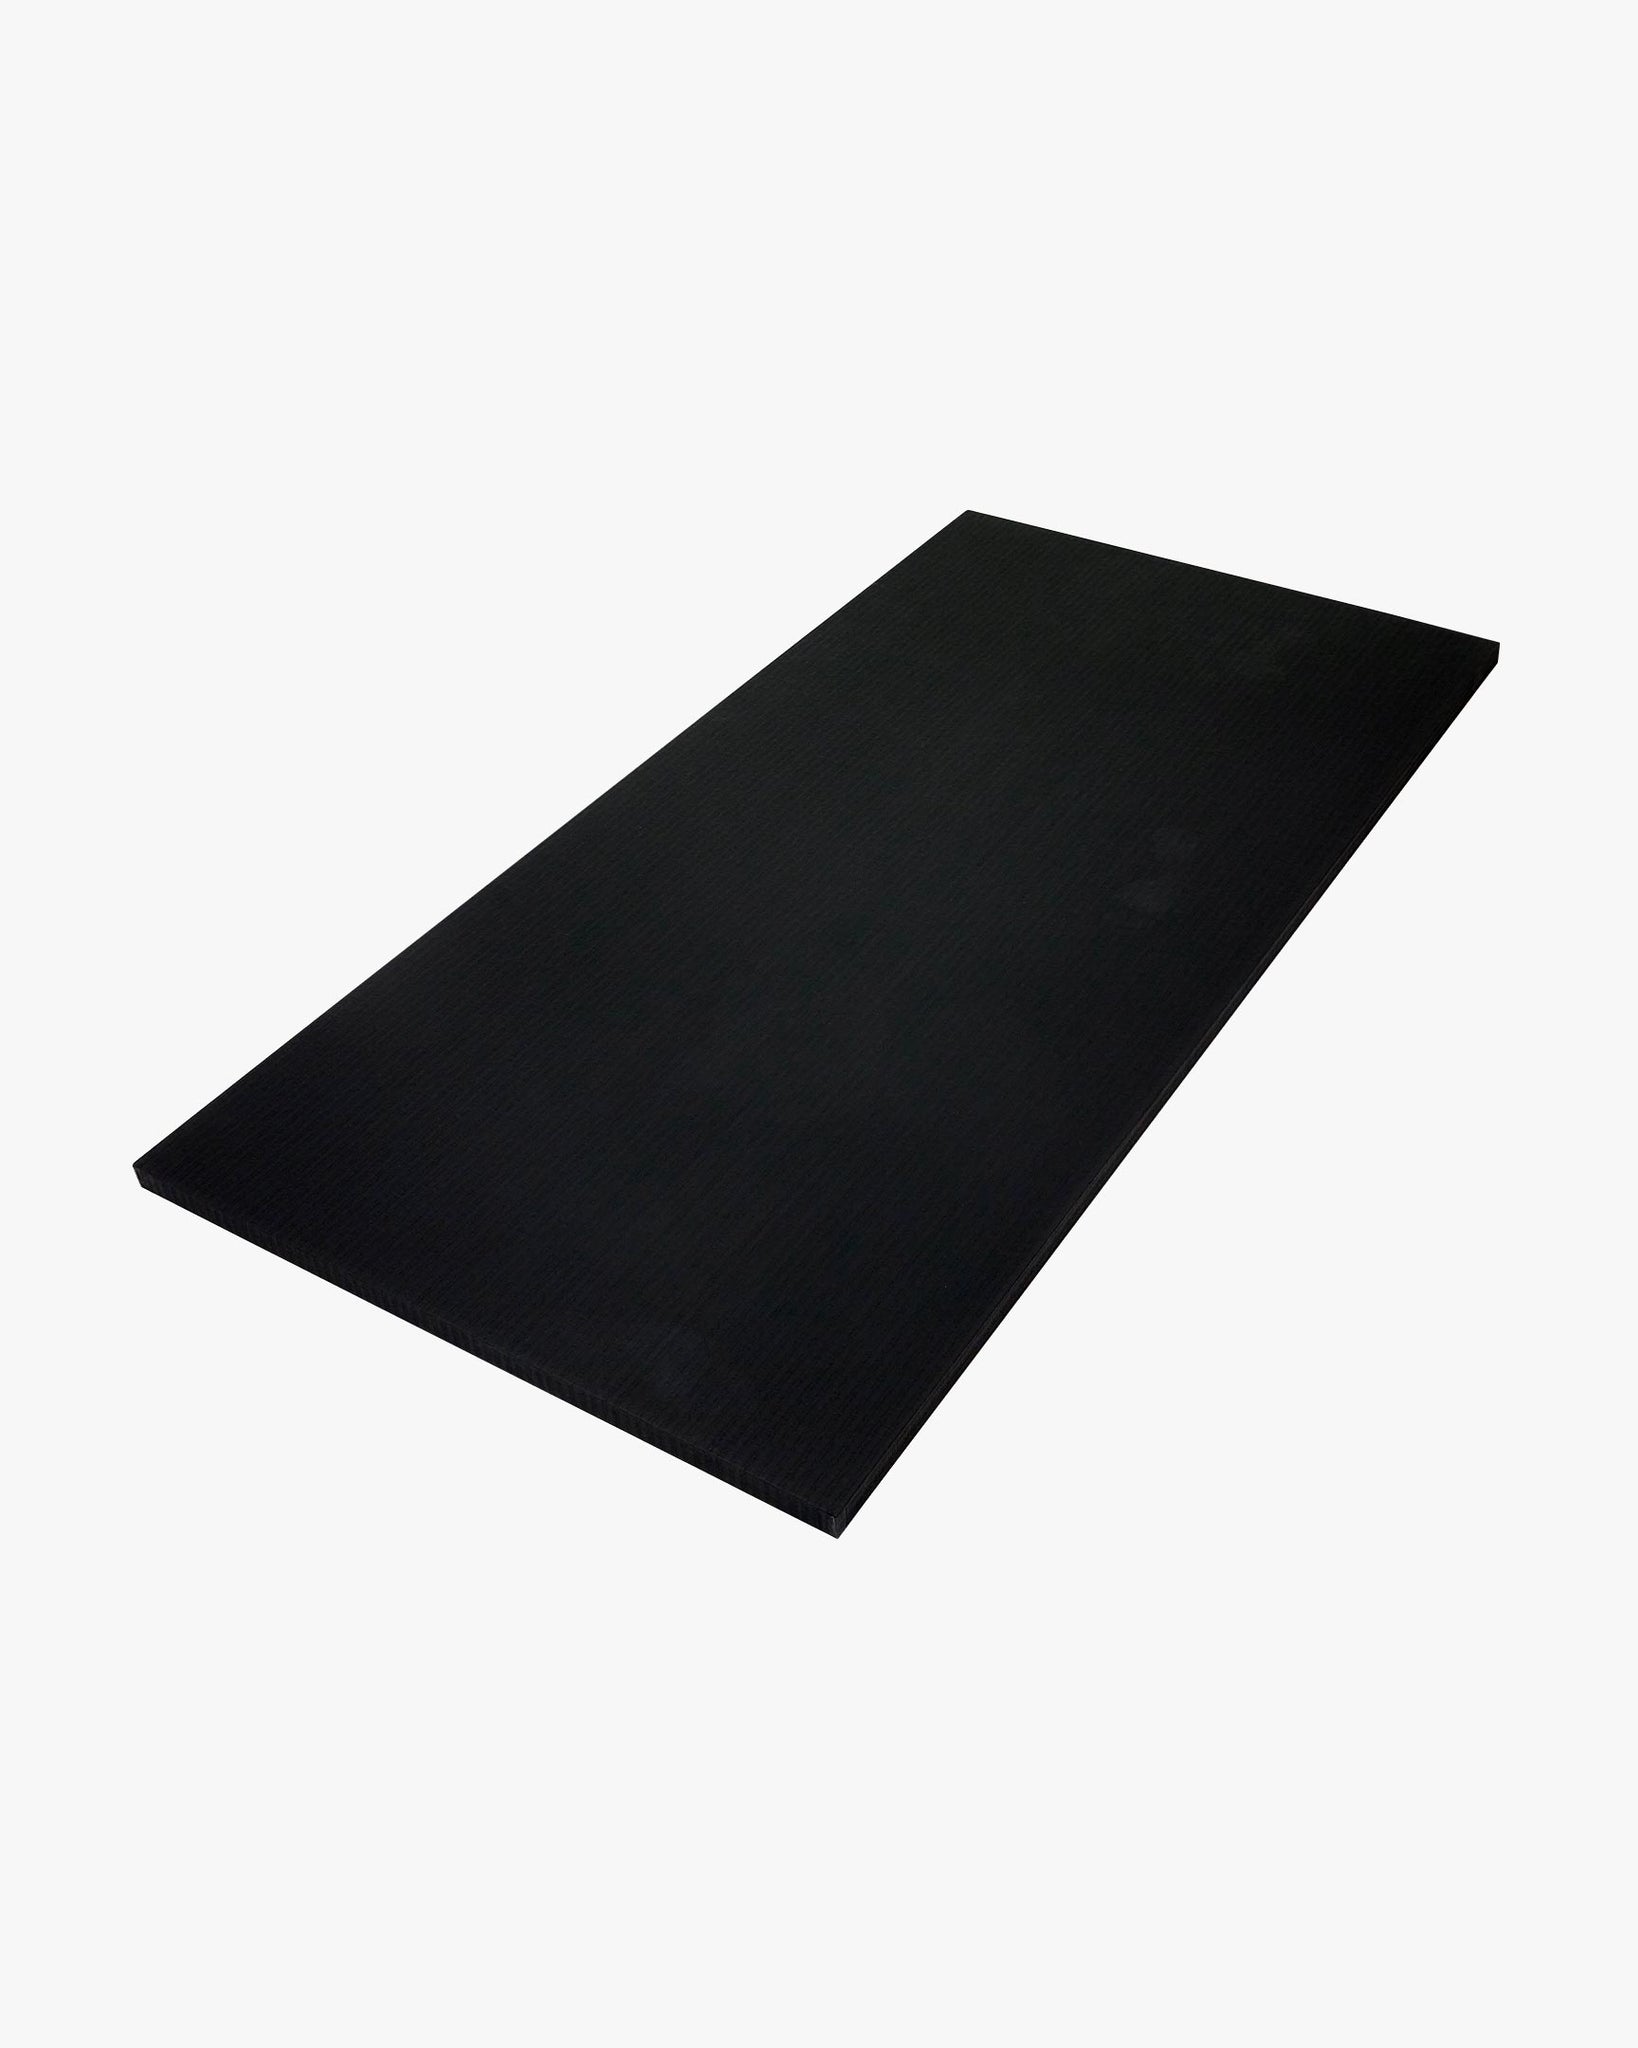 Tatami Tile Mat - 1m x 2m x 1.5" Black